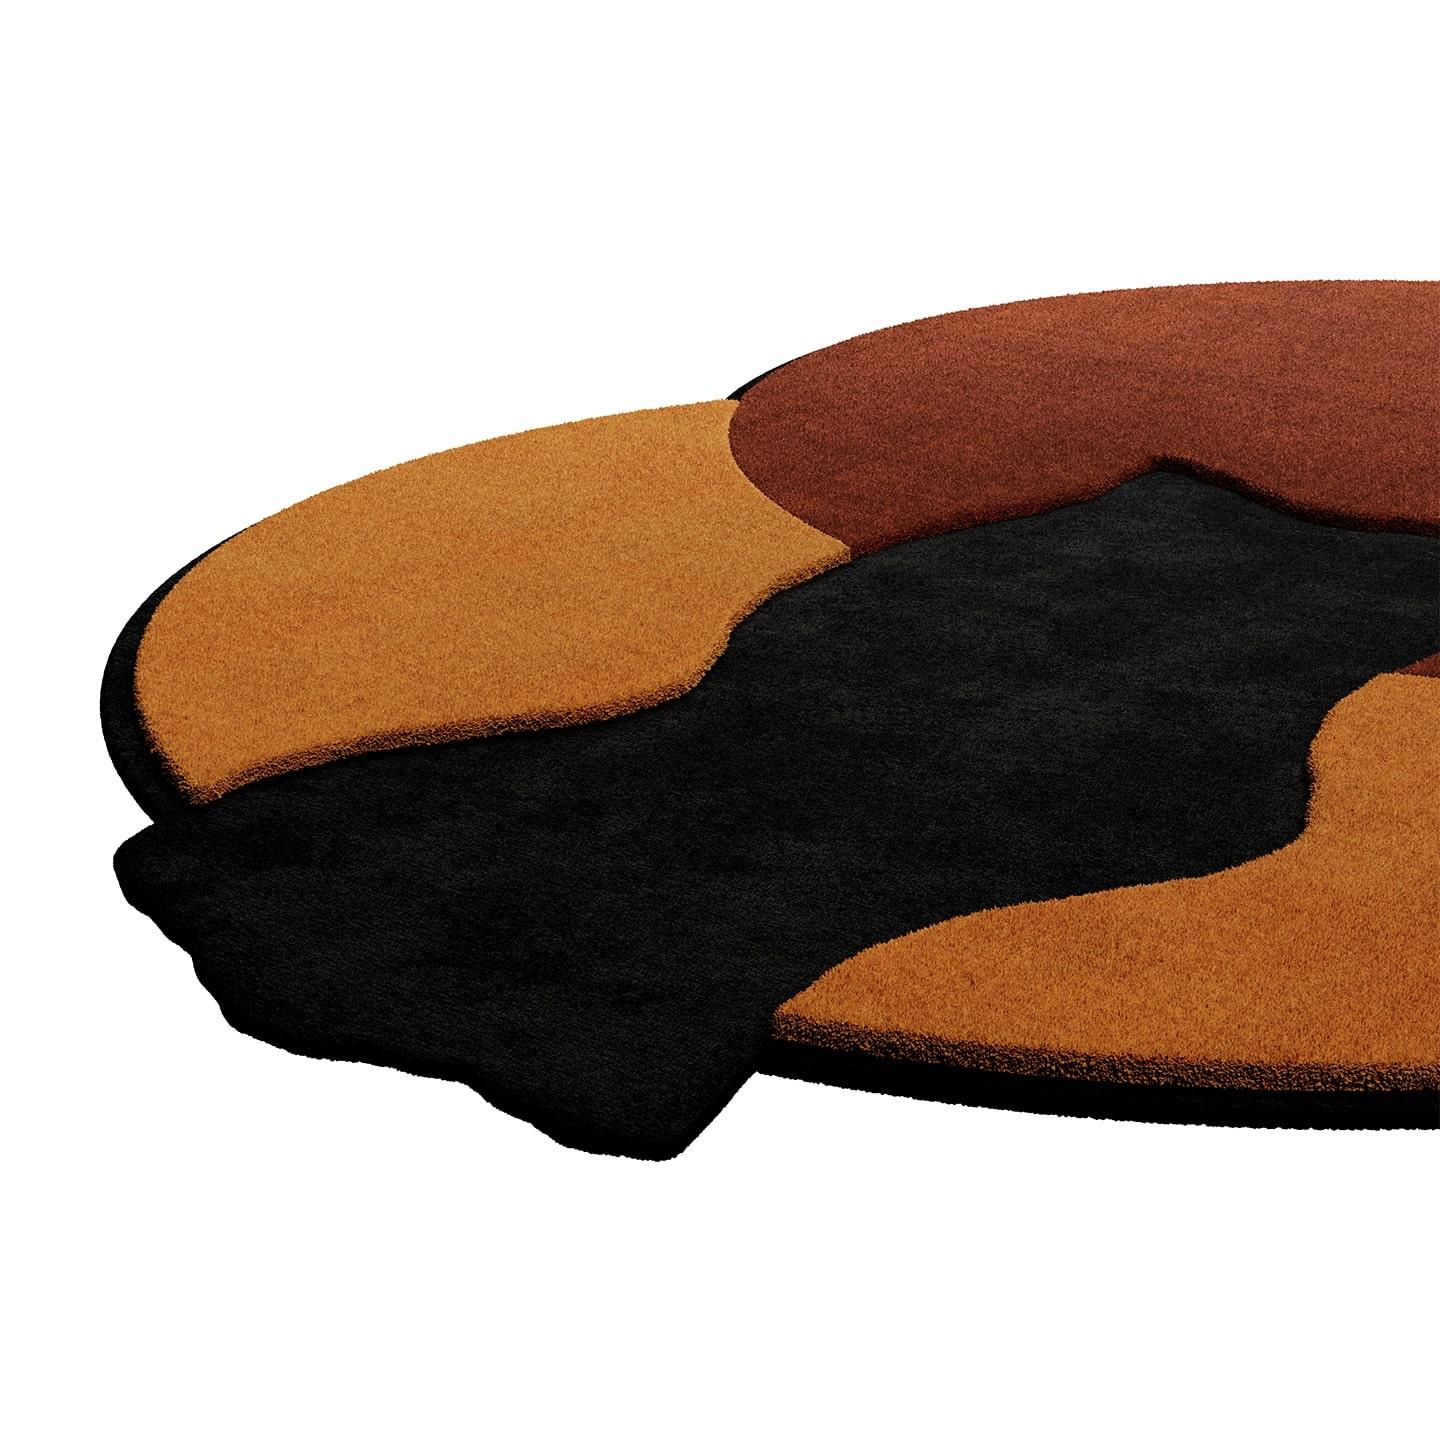 TAPIS Shaped #020 ist ein eklektischer Teppich, der das Flair der Moderne aus der Mitte des Jahrhunderts mit dem Memphis-Stil verbindet. Dieser Teppich ist handgetuftet und besteht aus 100% botanischer Seide mit einer Dicke von 16 mm. Erhältlich in